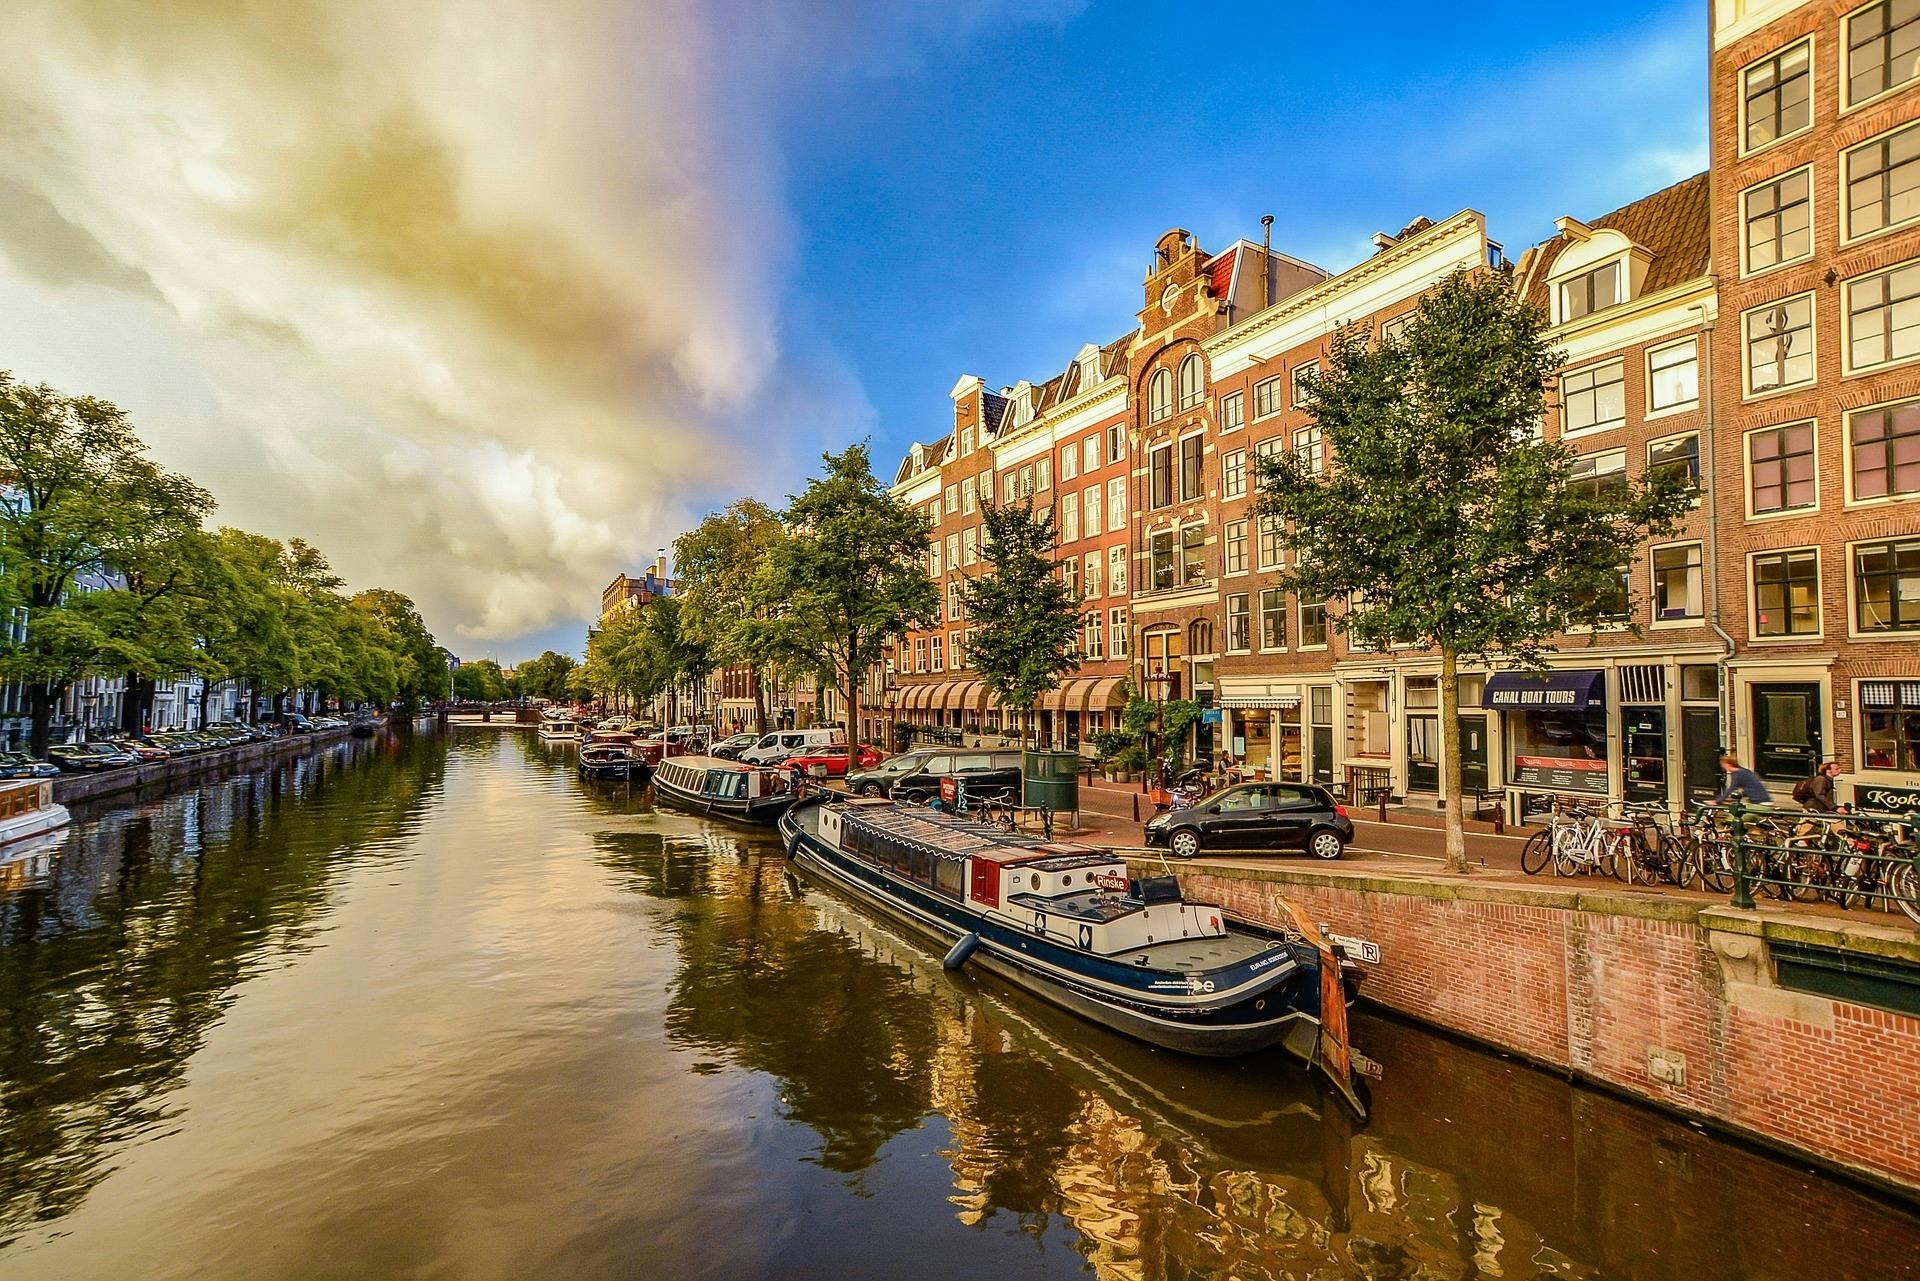 Gedeelde rondleiding door de 'Glory of Holland' en Amsterdam vanuit Brussel